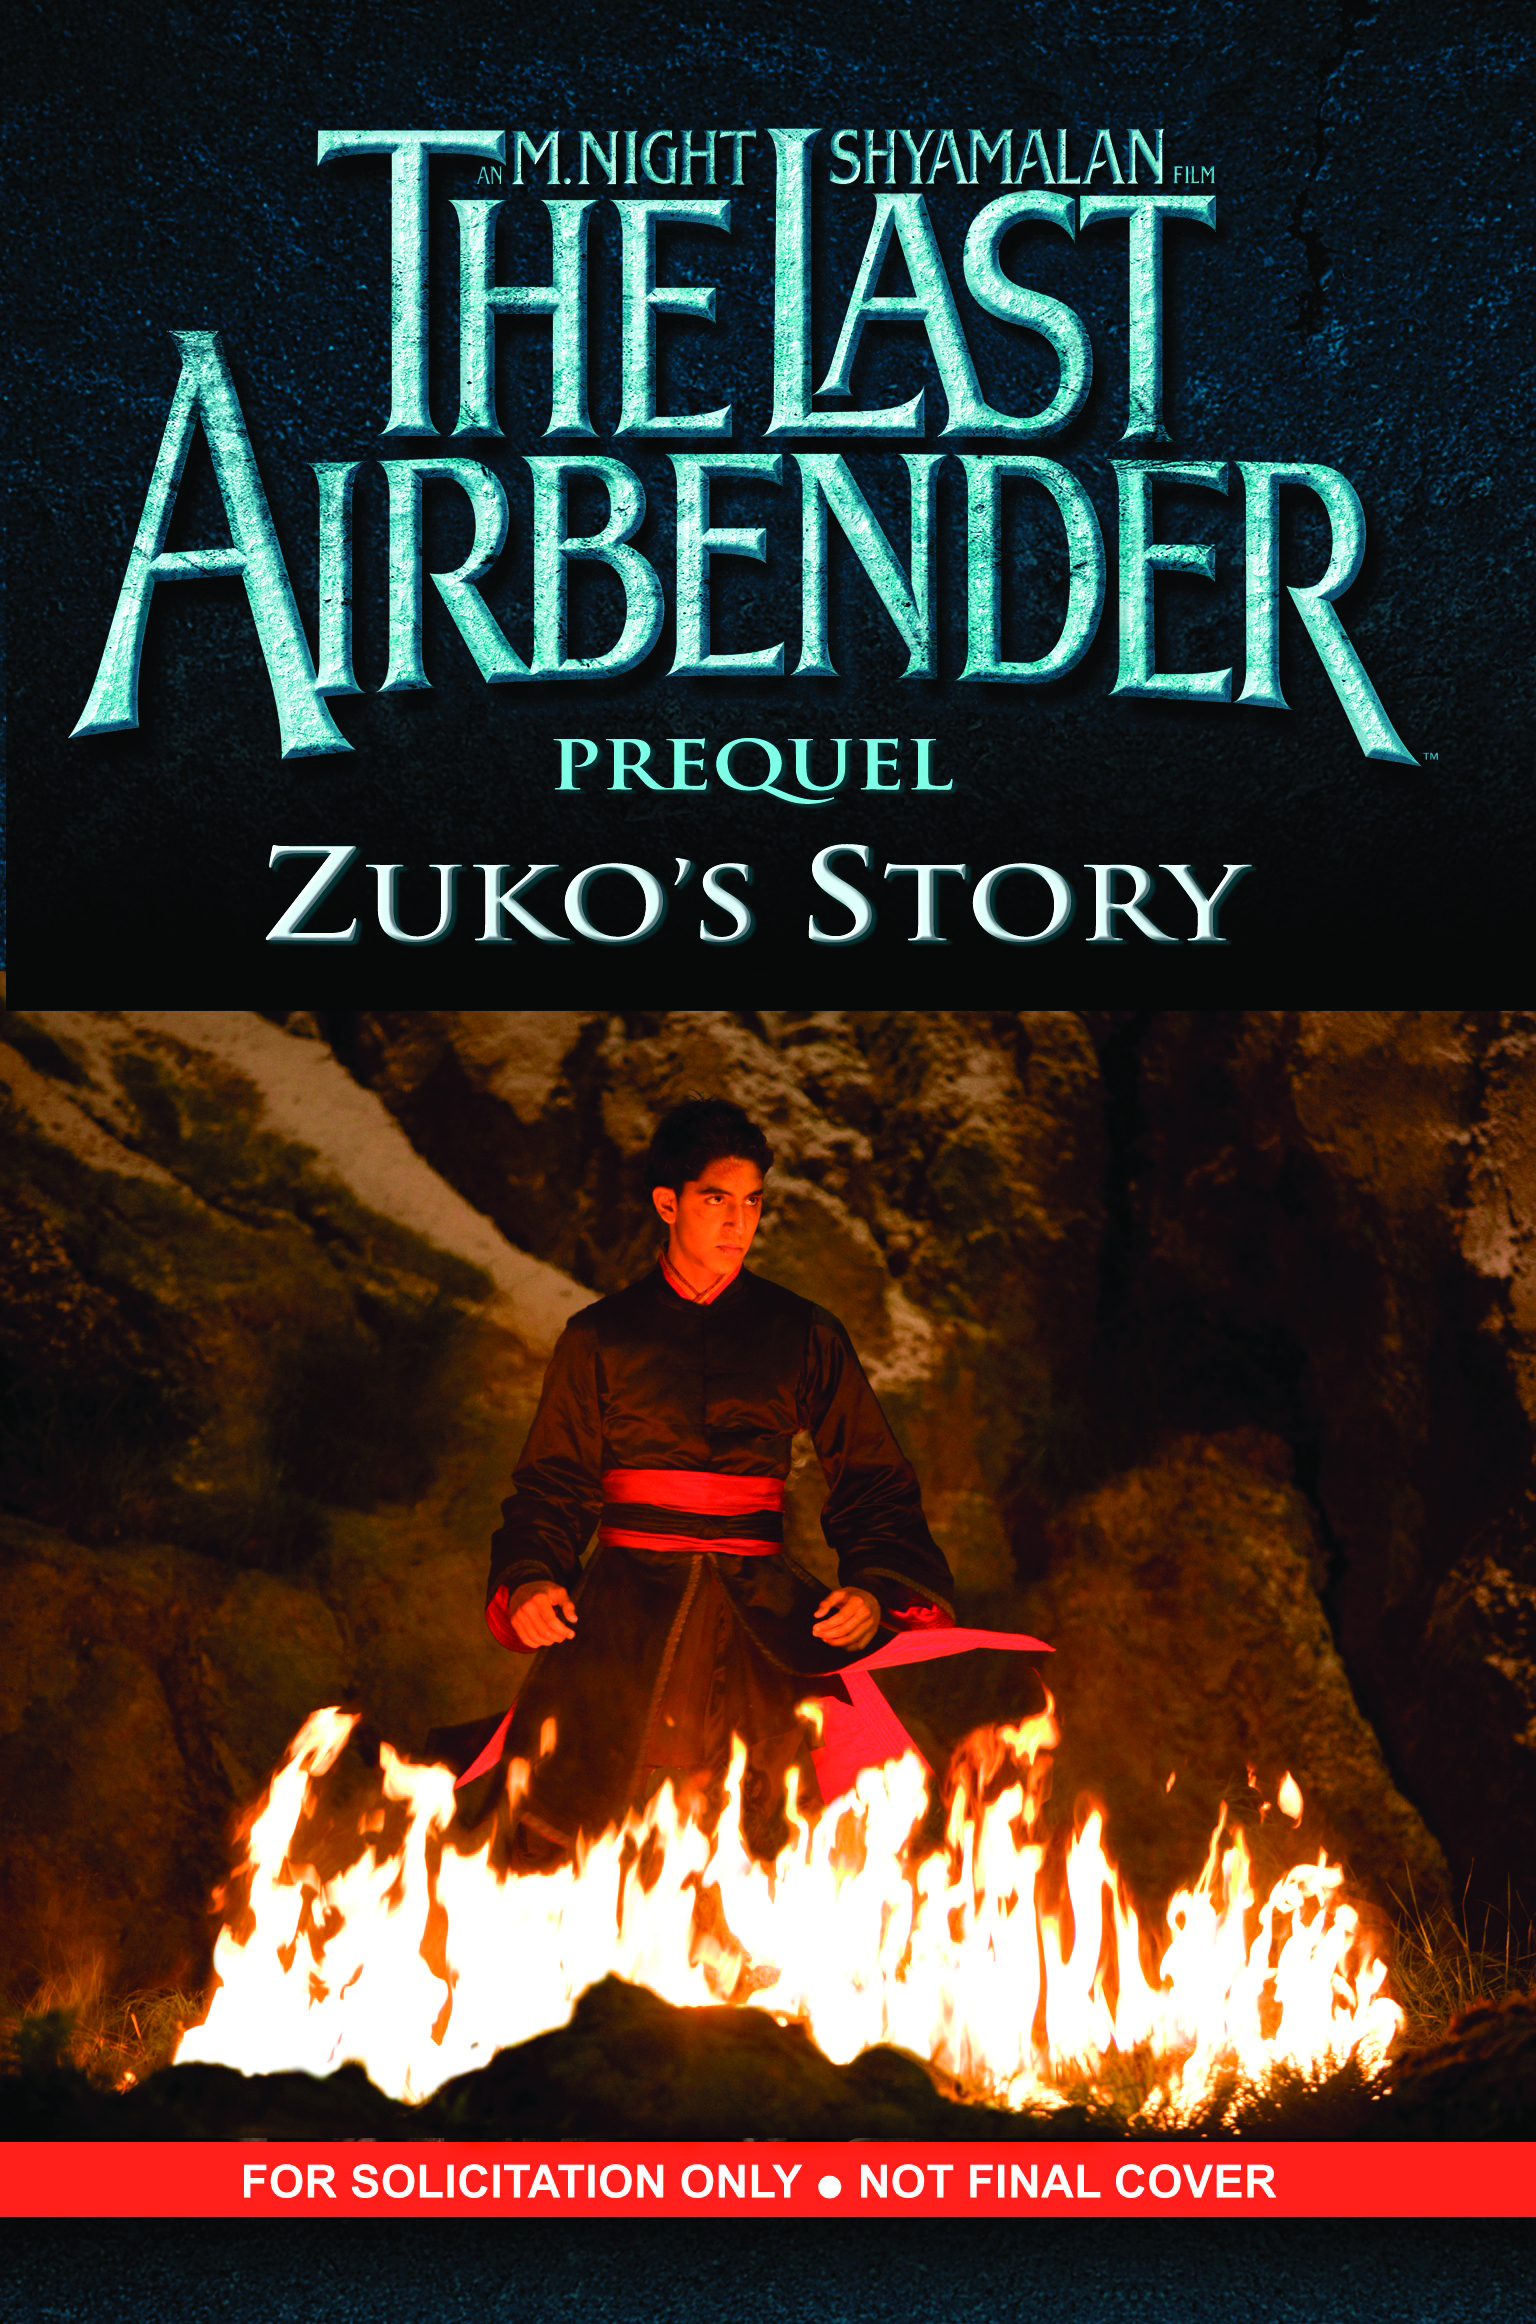 The last airbender prequel zuko's story